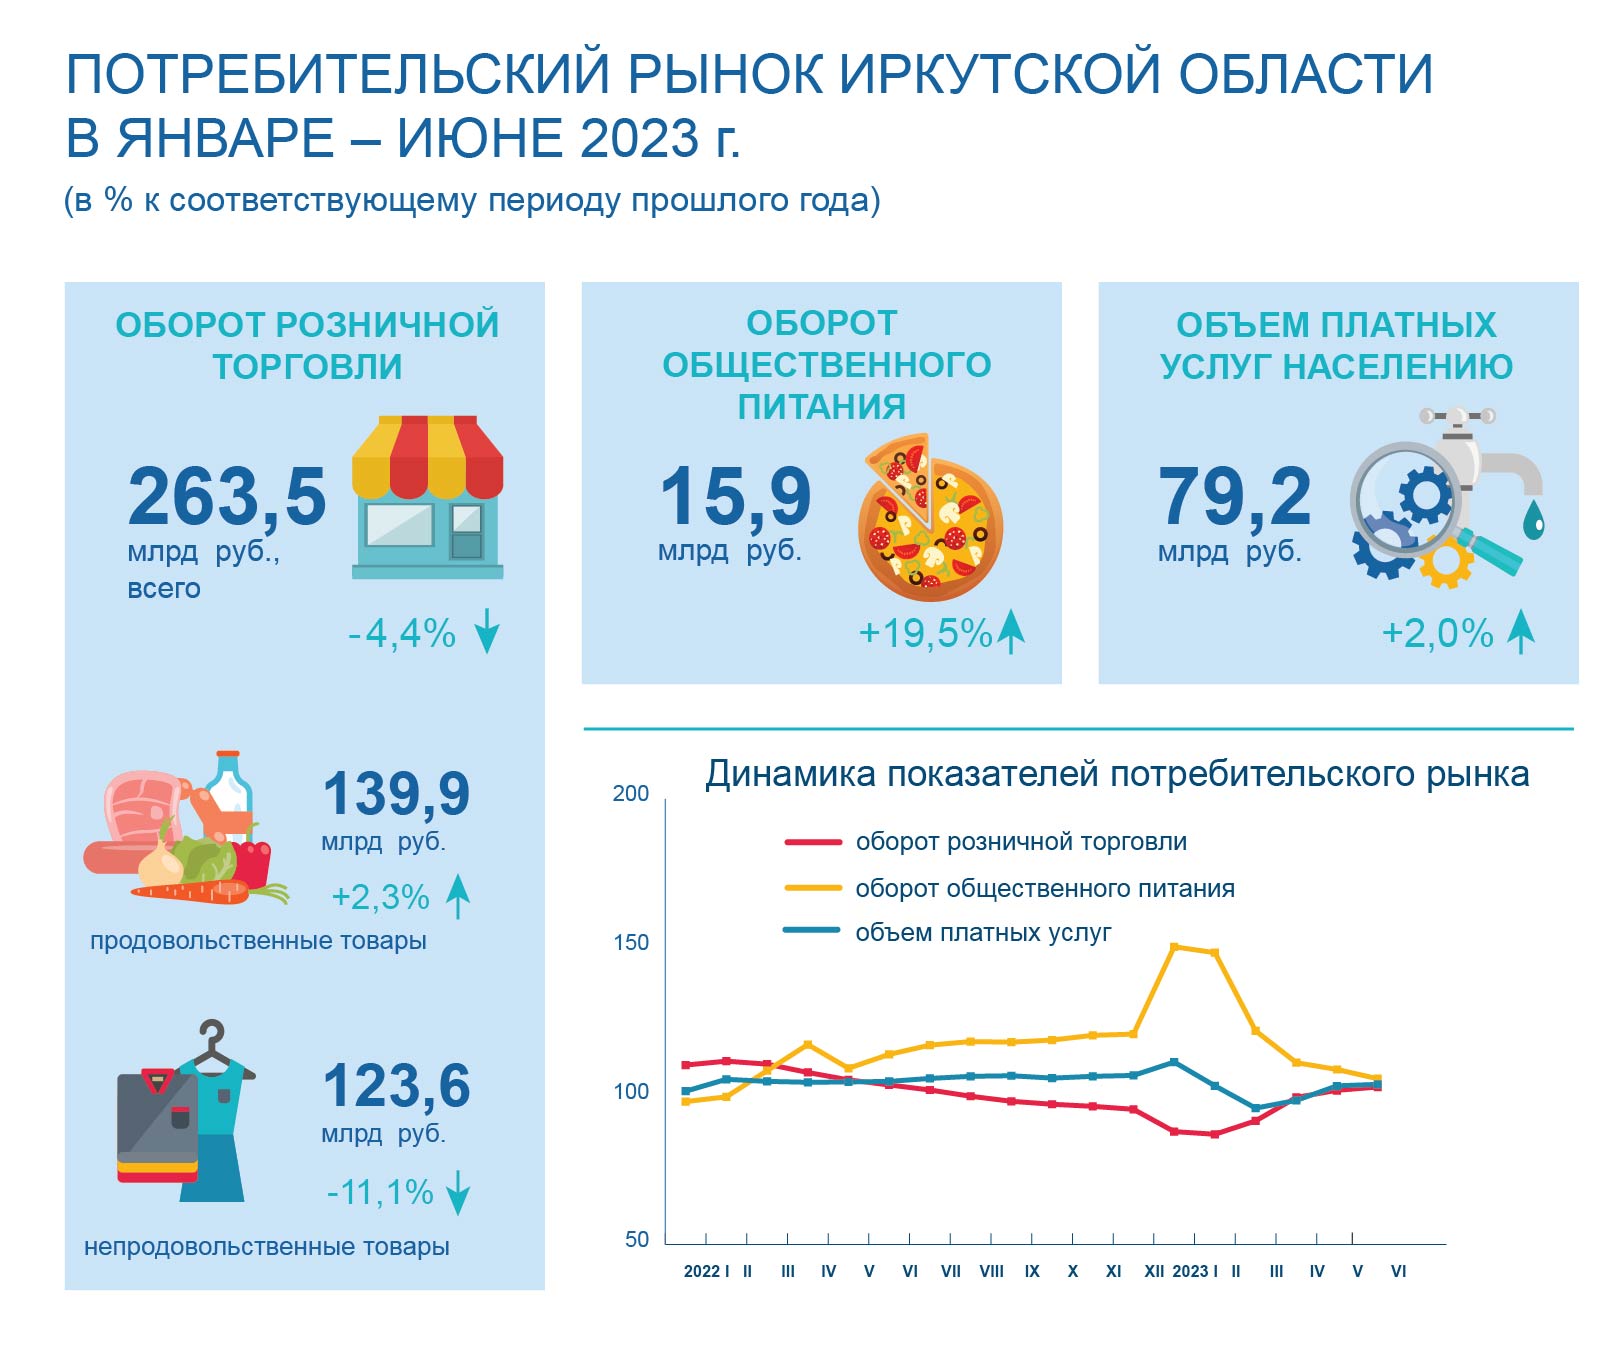 Иркутск статистика сайт. Инфографика потребительская промышленность.